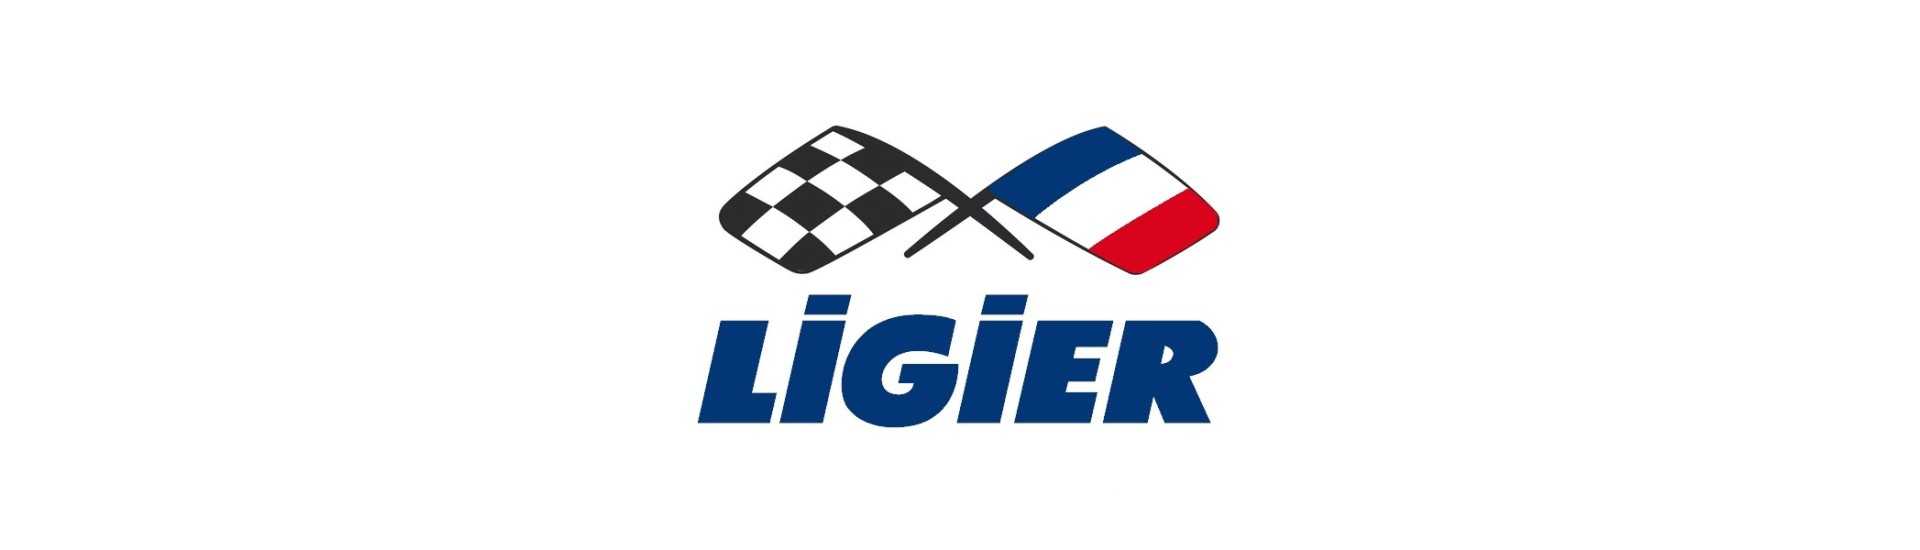 Vetro alto al miglior prezzo per auto senza permesso Ligier